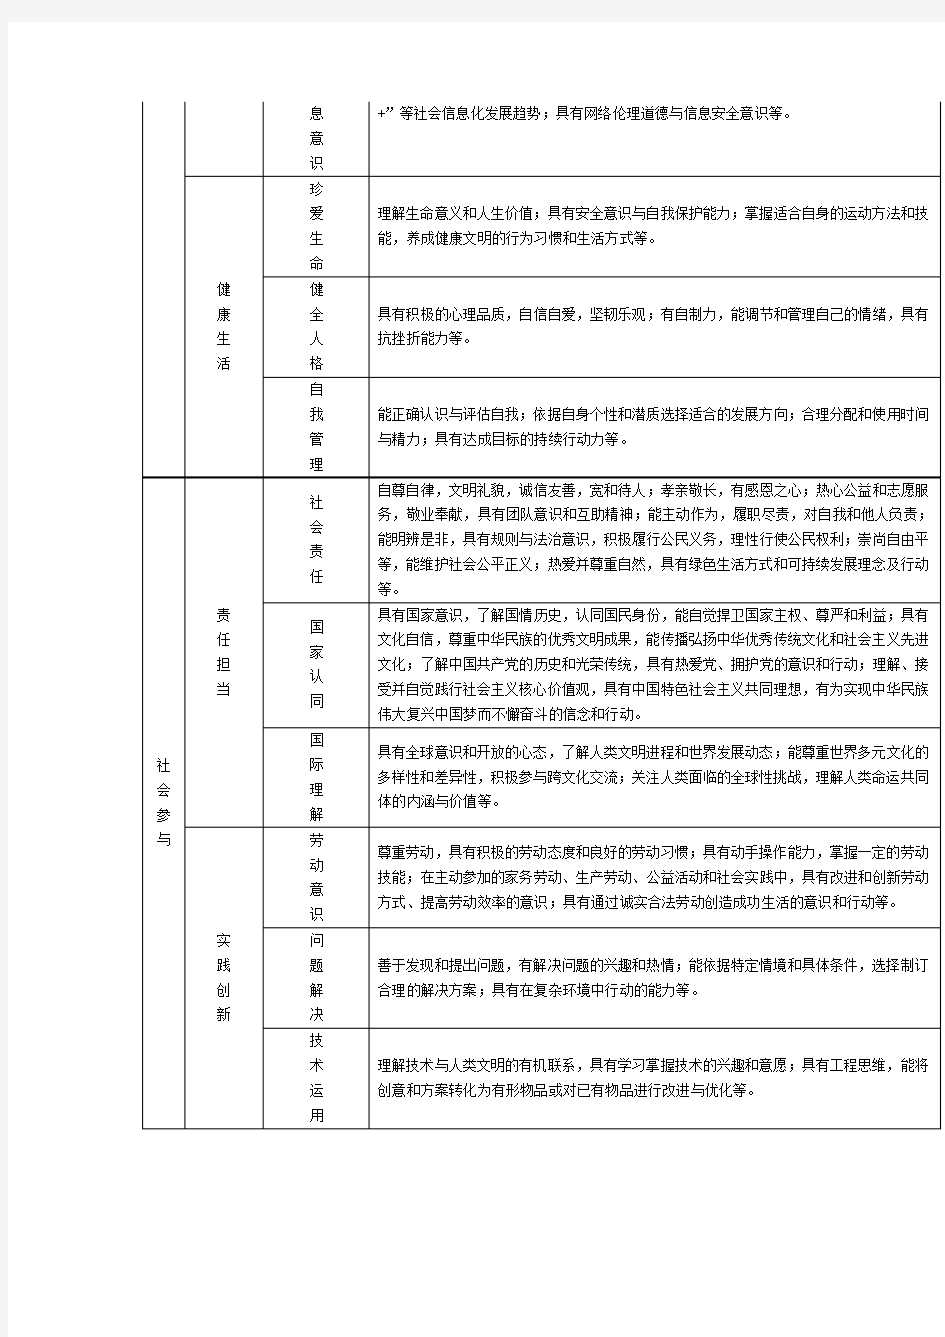 一张表看懂中国学生发展核心素养框架